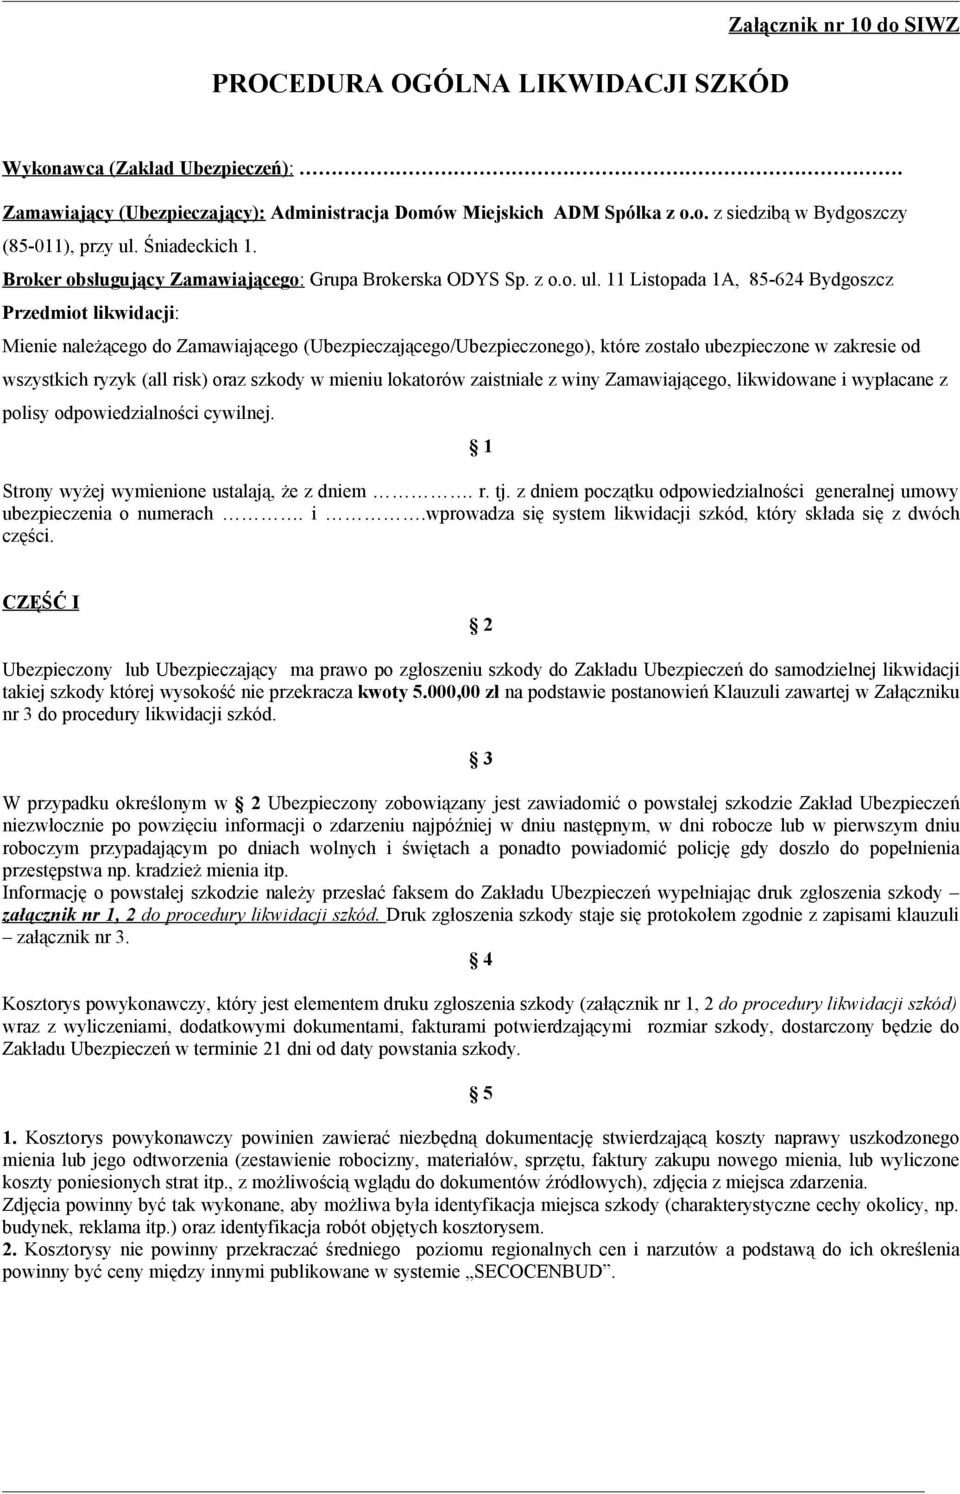 Listopada A, 85-624 Bydgoszcz Przedmiot likwidacji: Mienie należącego do Zamawiającego (Ubezpieczającego/Ubezpieczonego), które zostało ubezpieczone w zakresie od wszystkich ryzyk (all risk) oraz